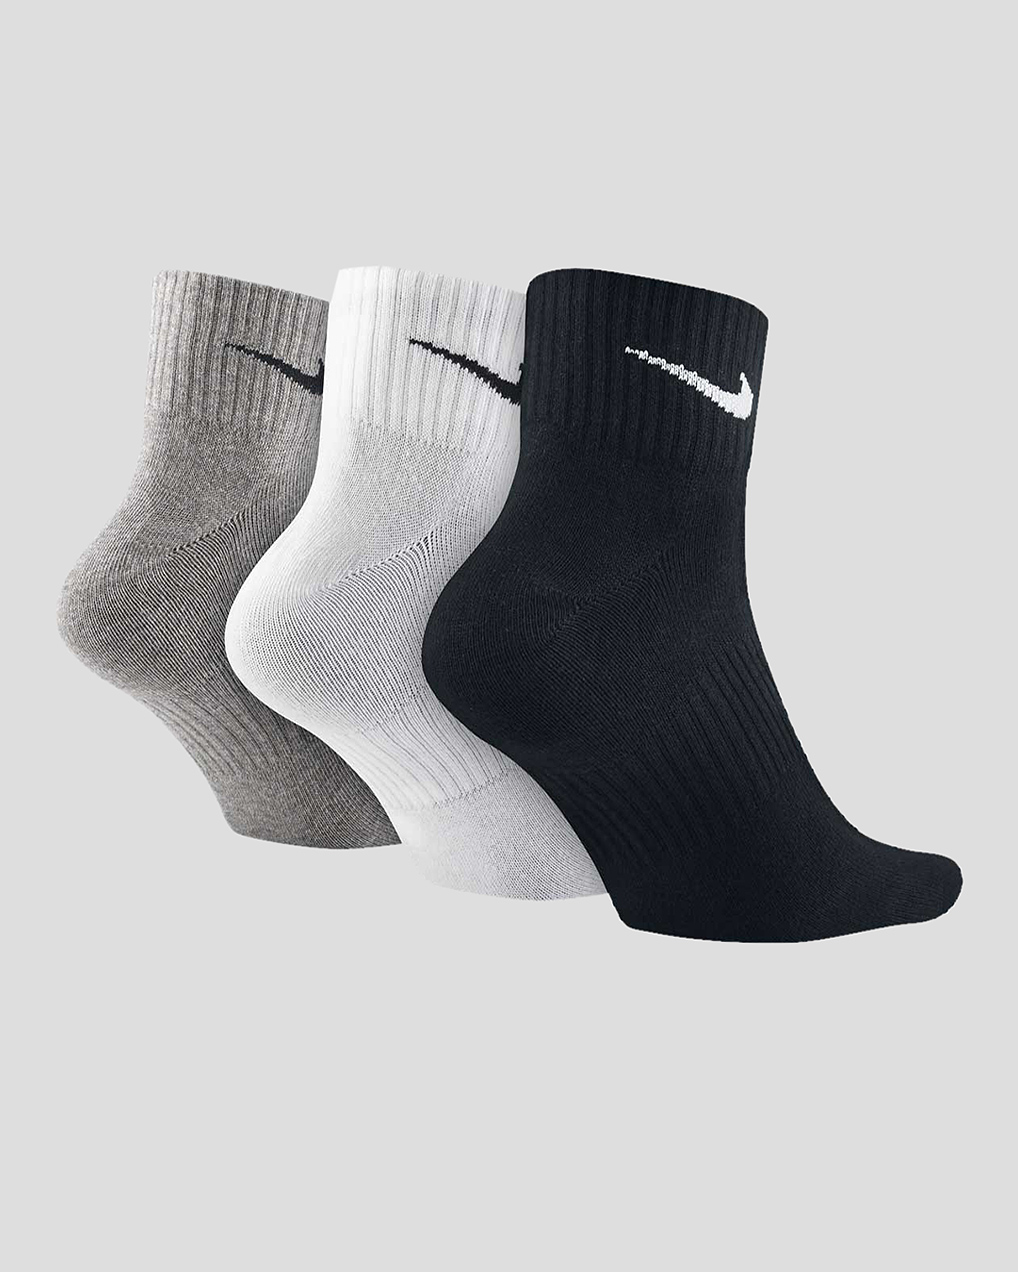 Носки или наски. Носки Nike sx7677-010. Nike Lightweight носки теплые высокие. Носки найк 10 пар. Носки найк м 511.